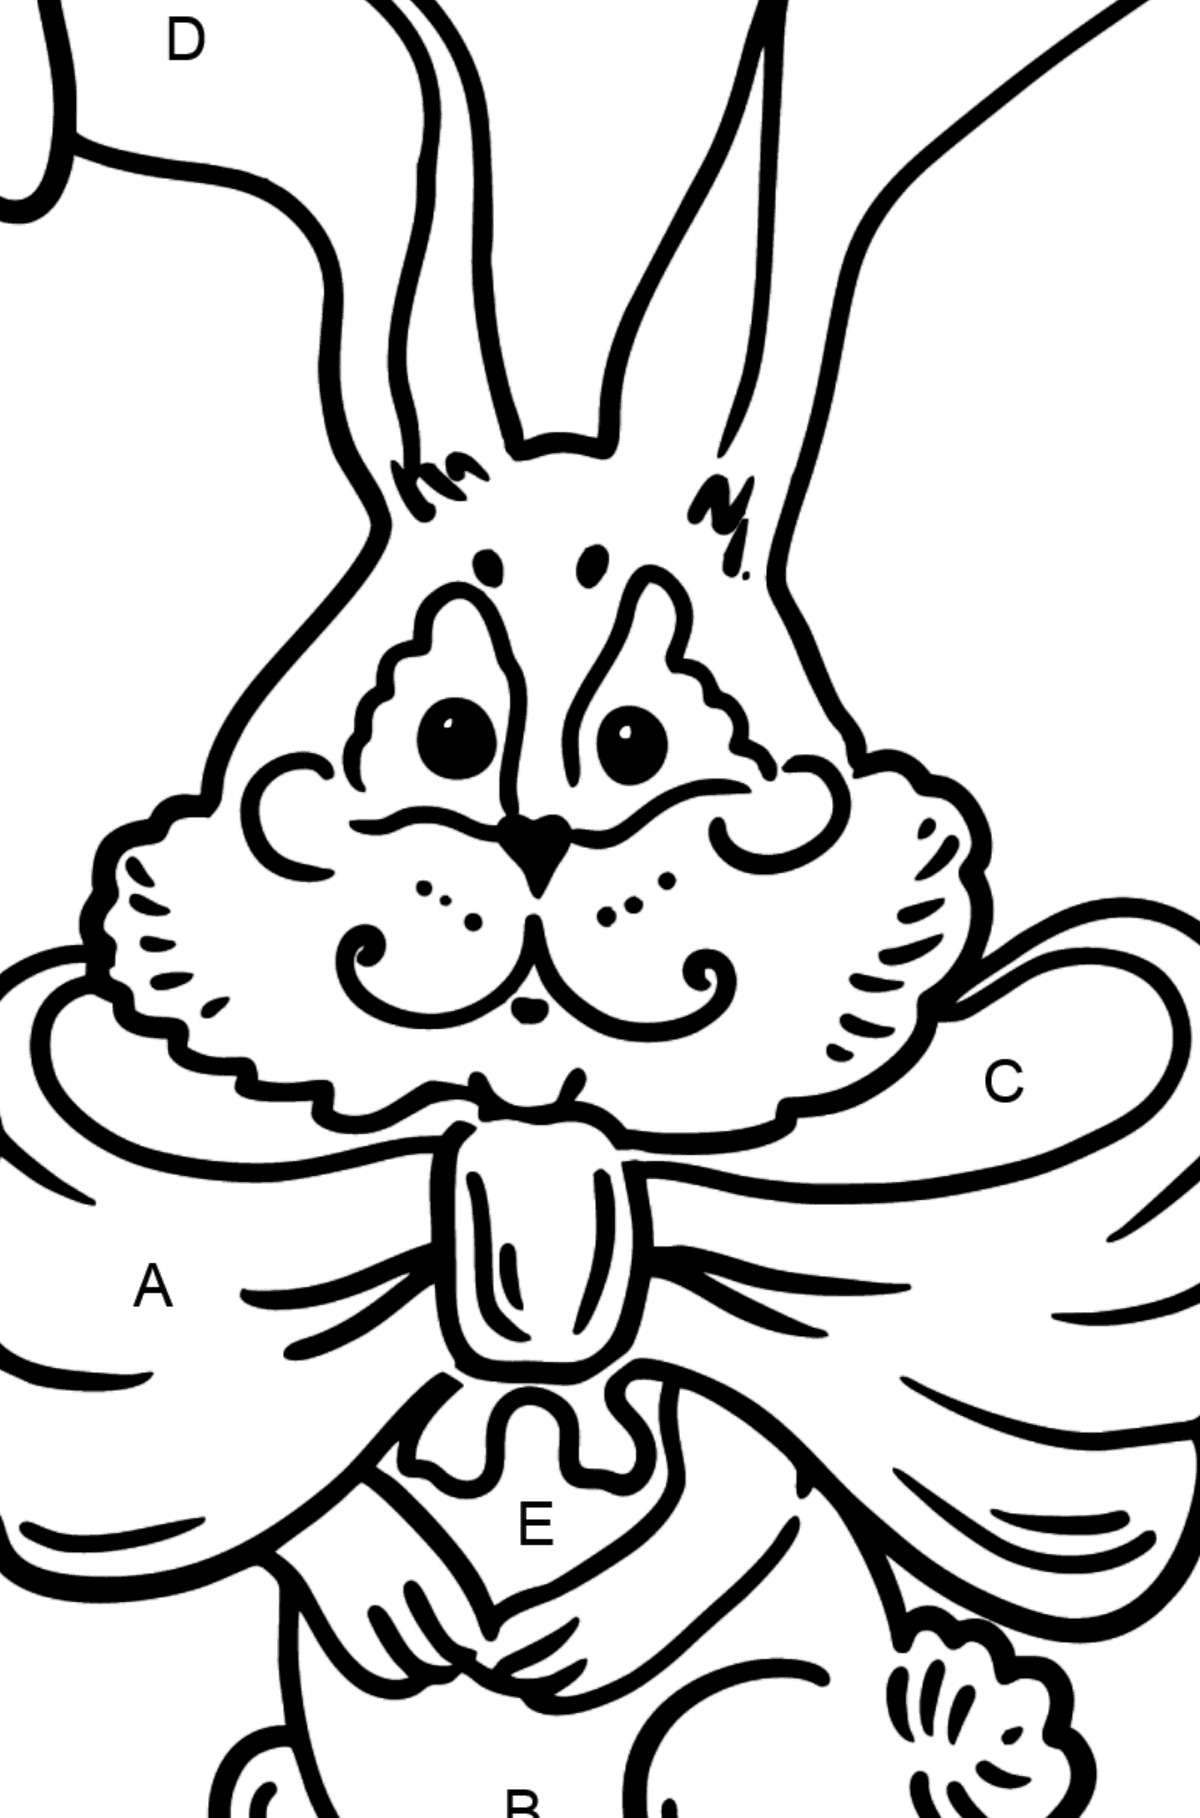 Desenho para colorir do coelho com um arco - Colorir por Letras para Crianças